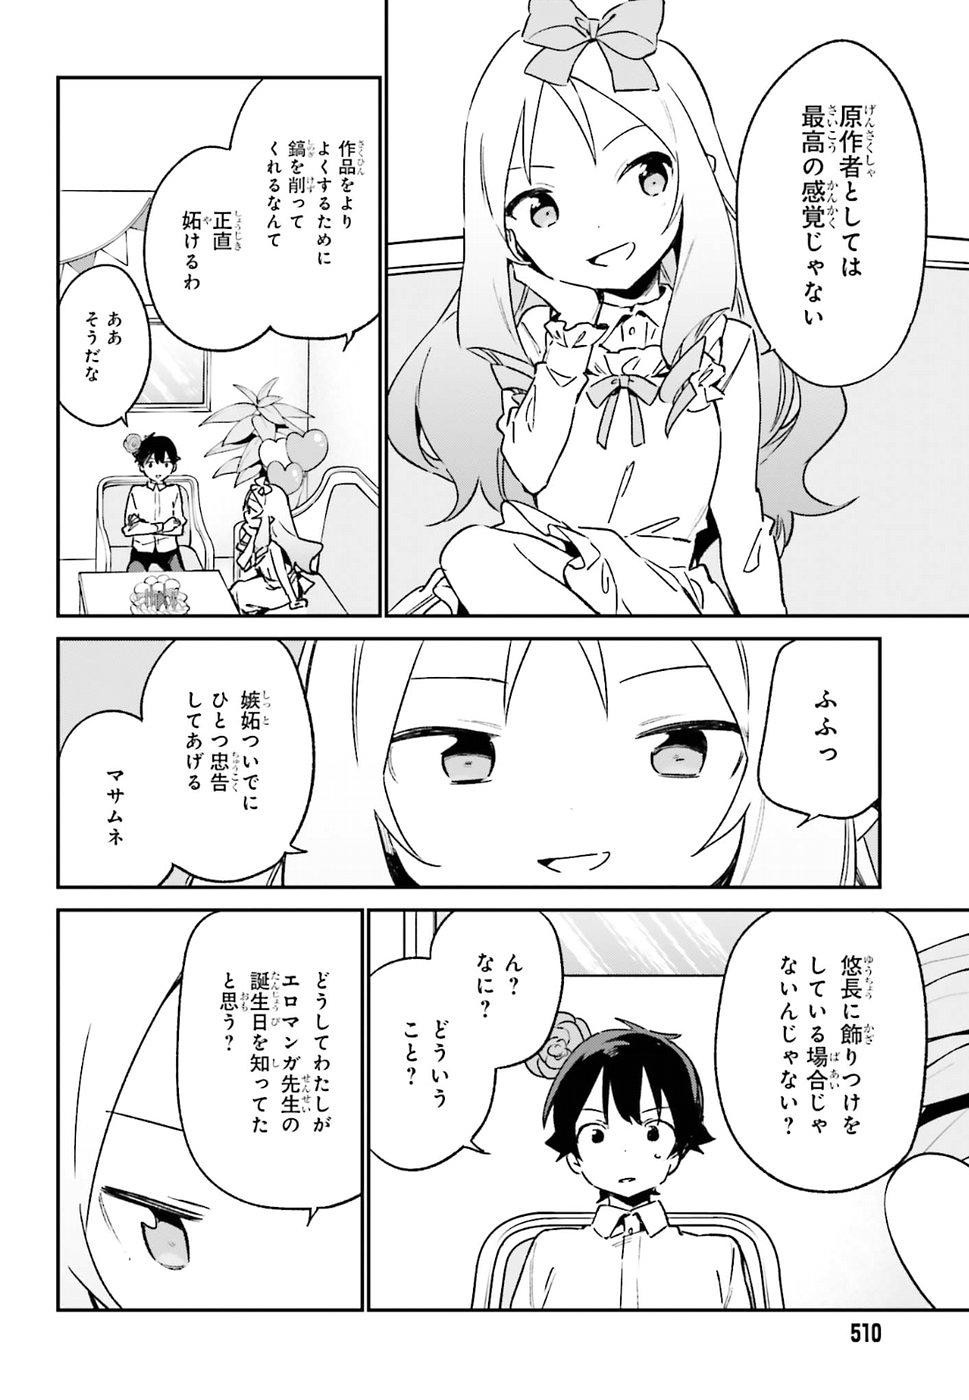 Ero Manga Sensei - Chapter 50 - Page 10